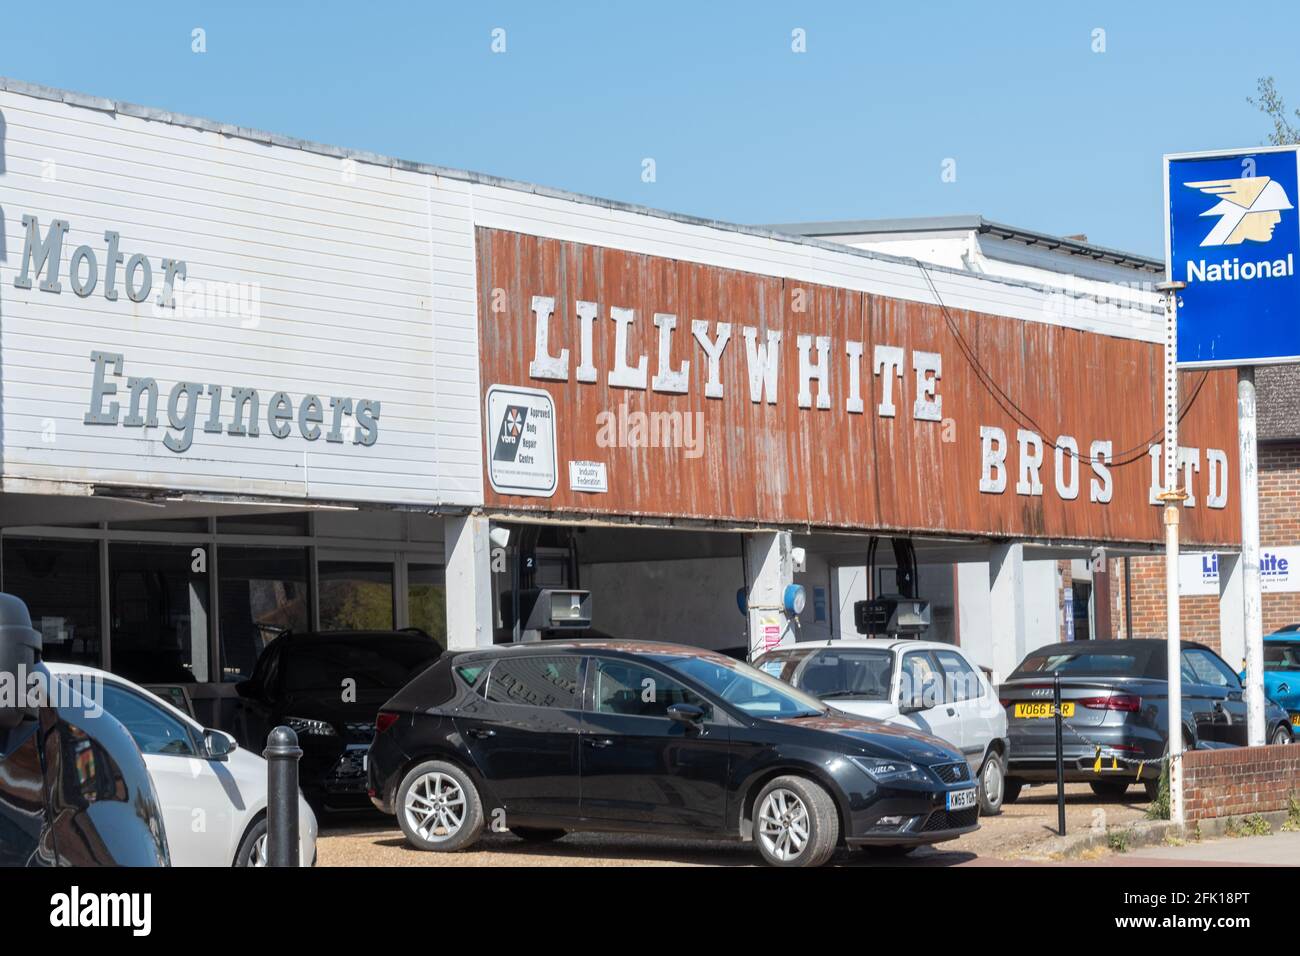 Piccola azienda a conduzione familiare, Lillywhite Bros Ltd Motor Engineers a Emsworth, Hampshire, Inghilterra, Regno Unito Foto Stock